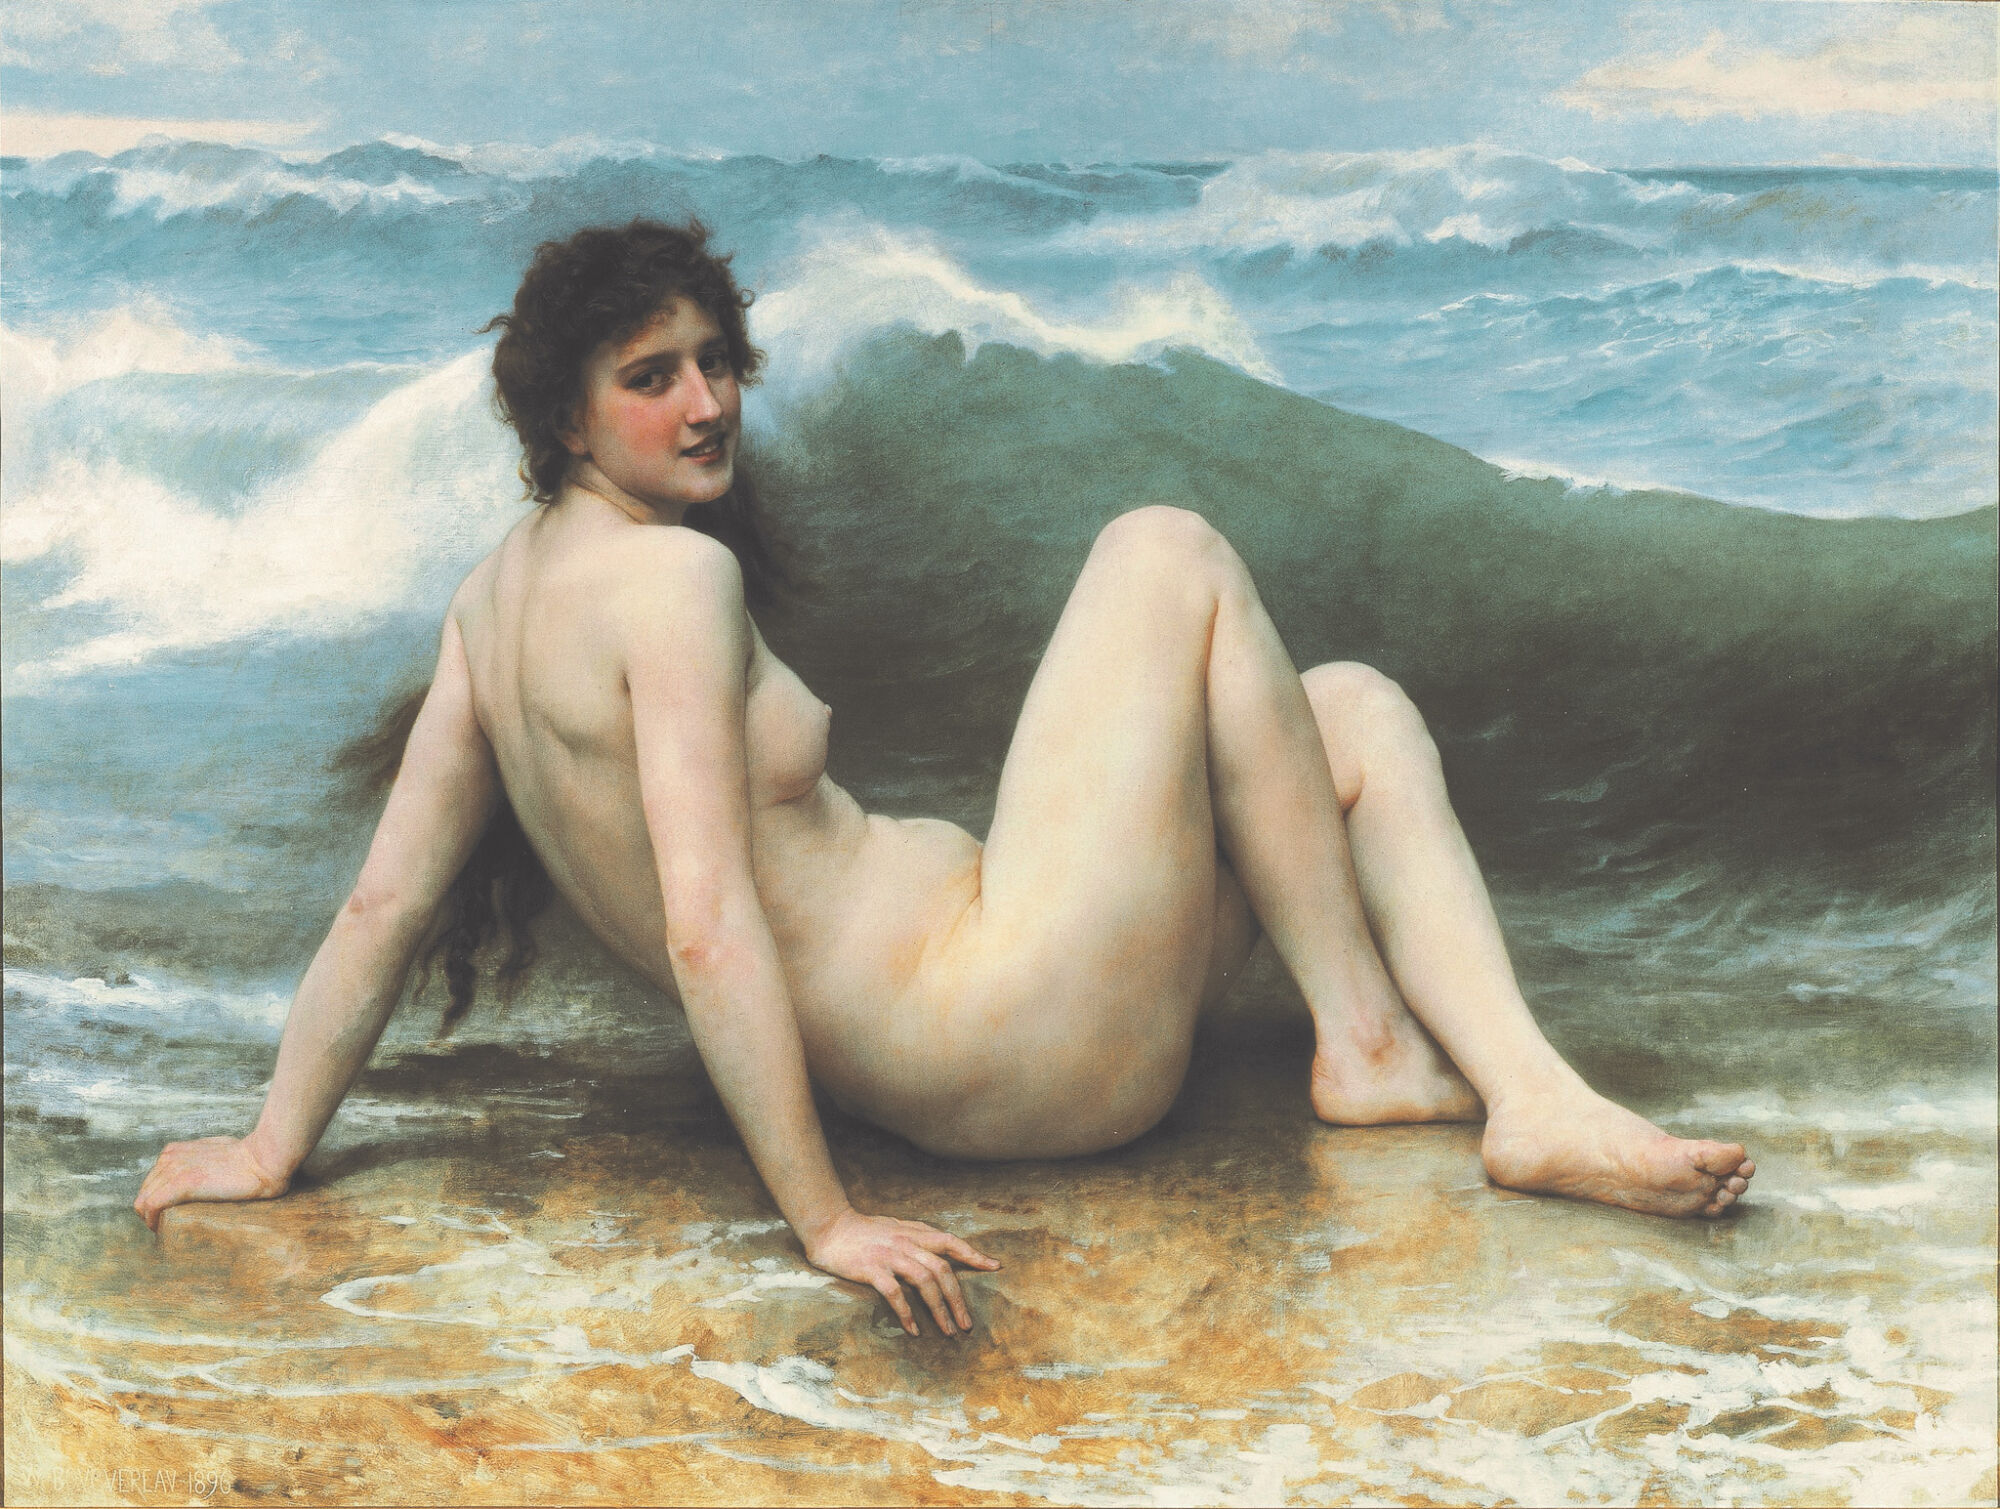 The Wick - WILLIAM ADOLPHE BOUGUEREAU
La vague, 1896

Oil on Canvas,
121 x 160.5 cm

